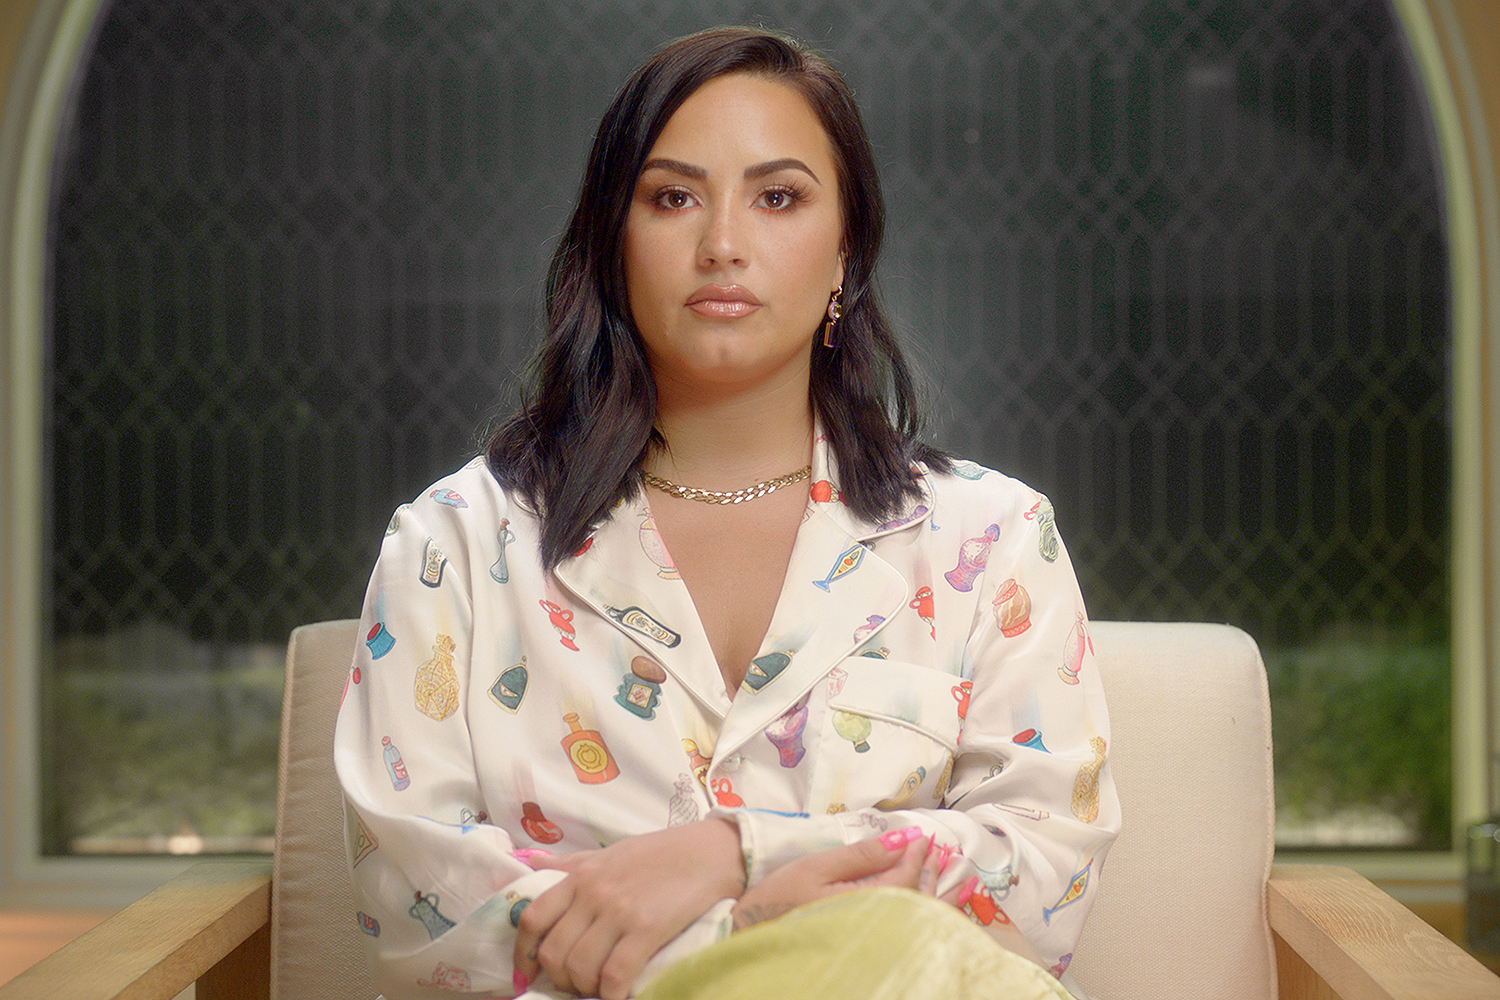 Izgalmas hír! Demi Lovato újabb önsegítő dokumentumfilmmel jelentkezik, őszintén beszél majd a túladagolásáról